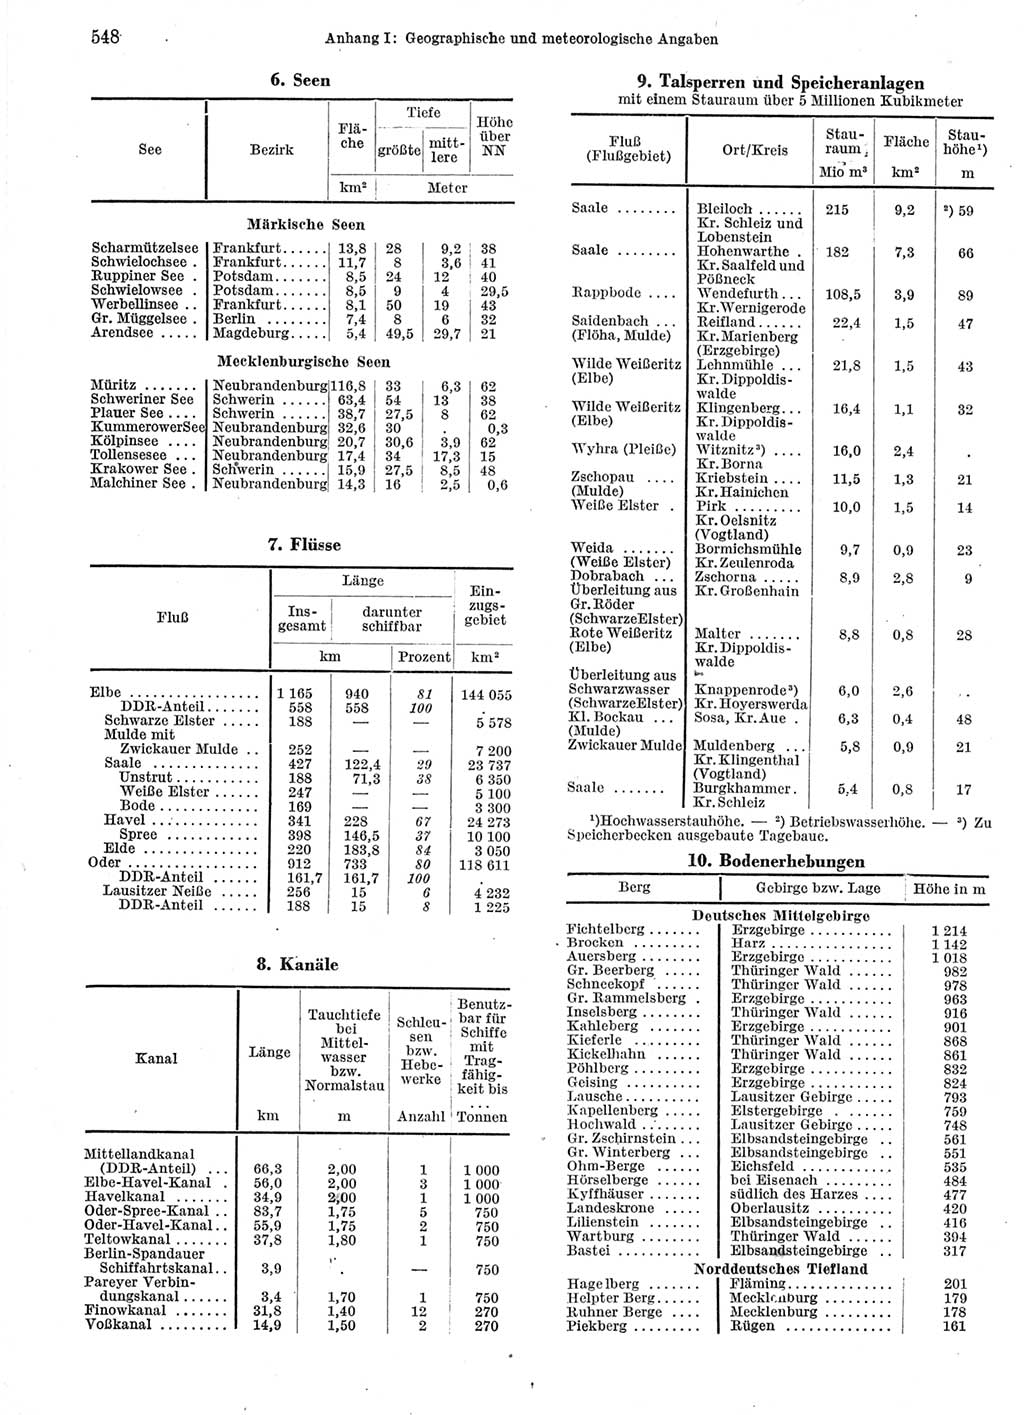 Statistisches Jahrbuch der Deutschen Demokratischen Republik (DDR) 1963, Seite 548 (Stat. Jb. DDR 1963, S. 548)